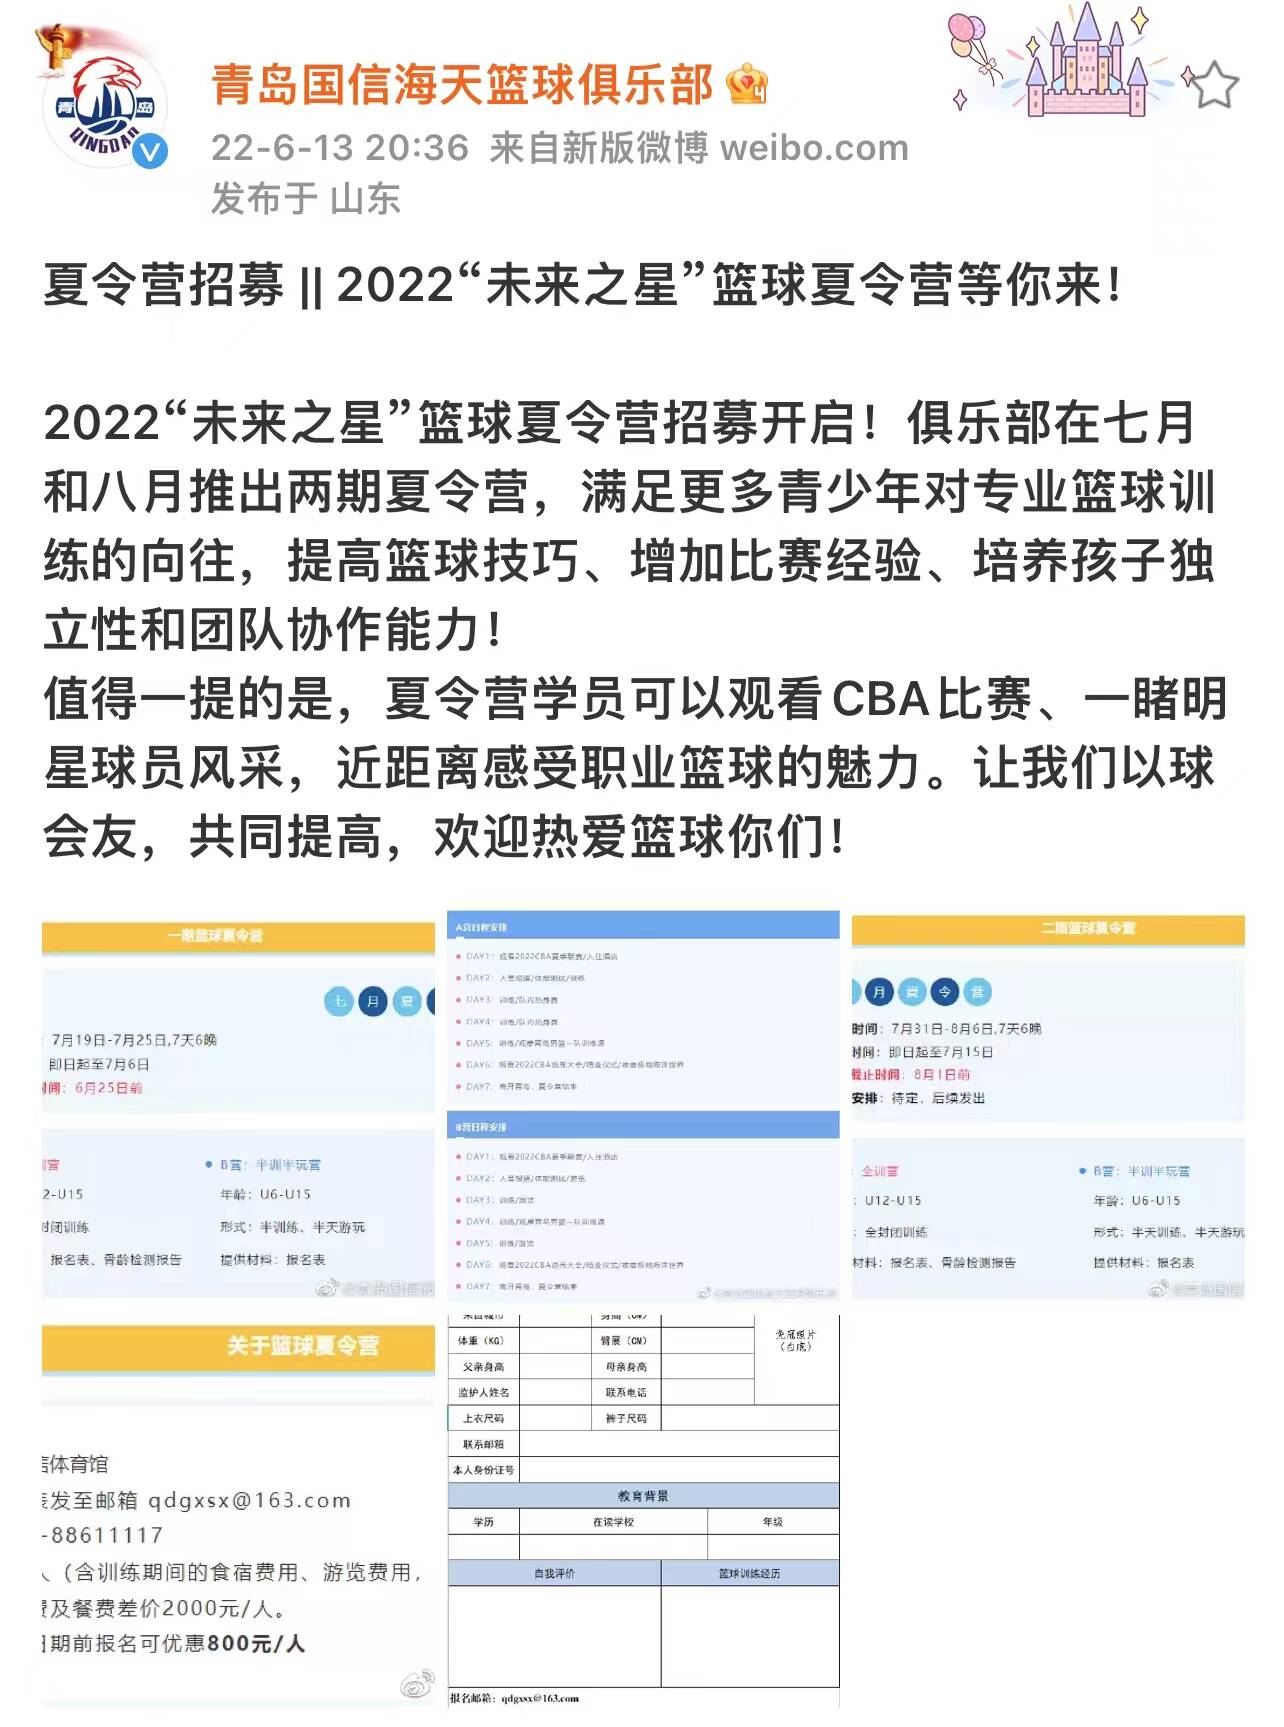 2022年CBA选秀大会或于7月24日在青岛进行